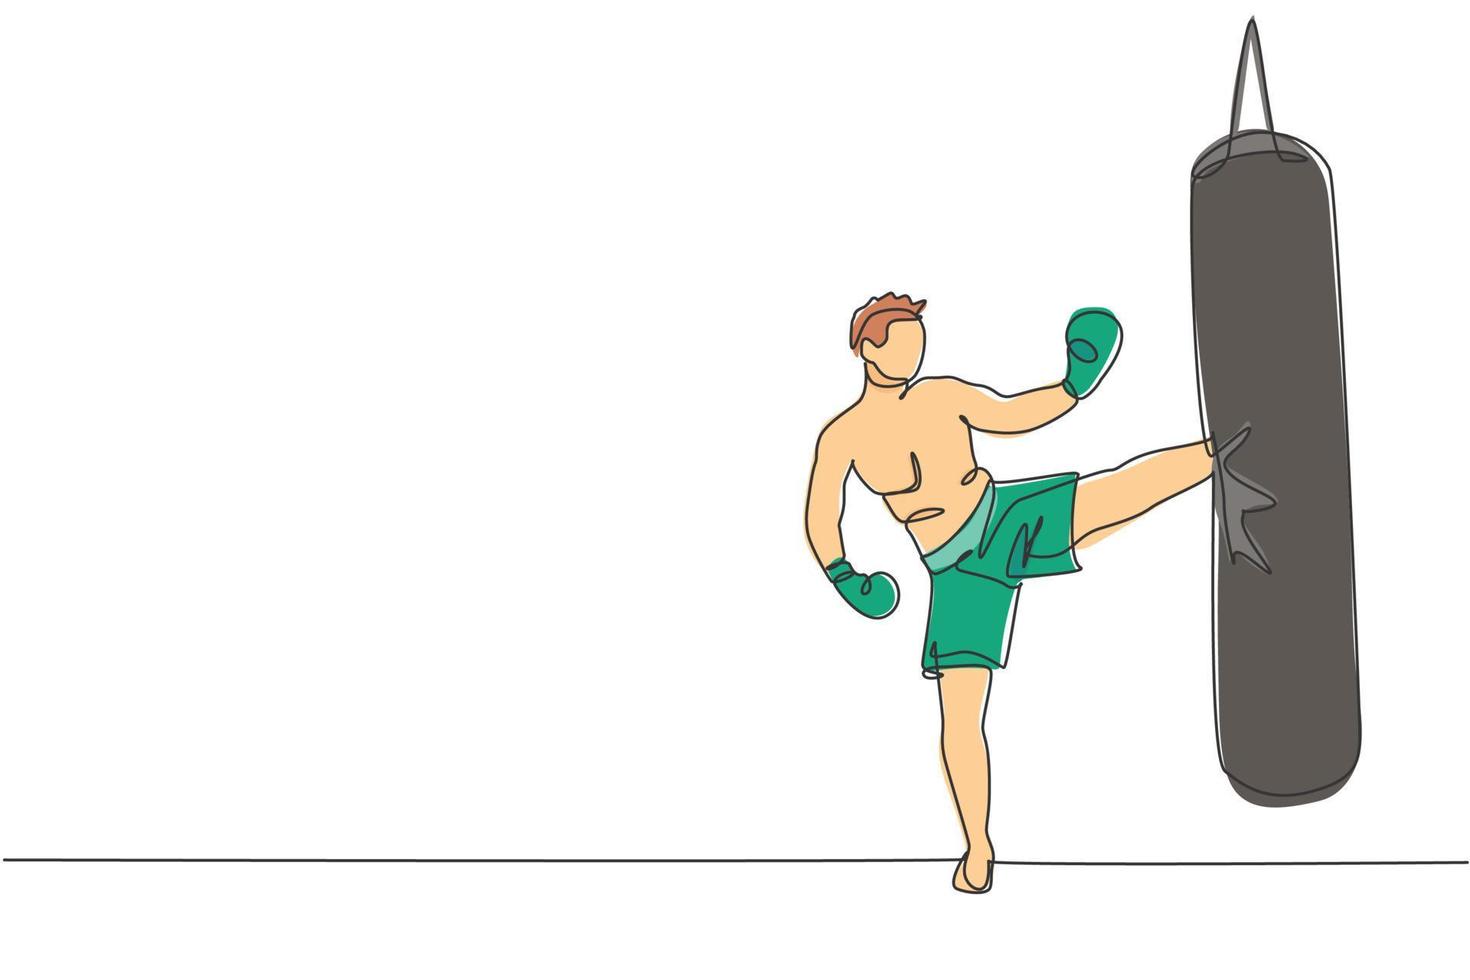 dibujo de una sola línea continua de un joven deportista que hace ejercicio de kickboxer pateando con un saco de boxeo en el pabellón deportivo. concepto de deporte de kickboxing de competición de lucha. ilustración de vector de diseño de dibujo de una línea